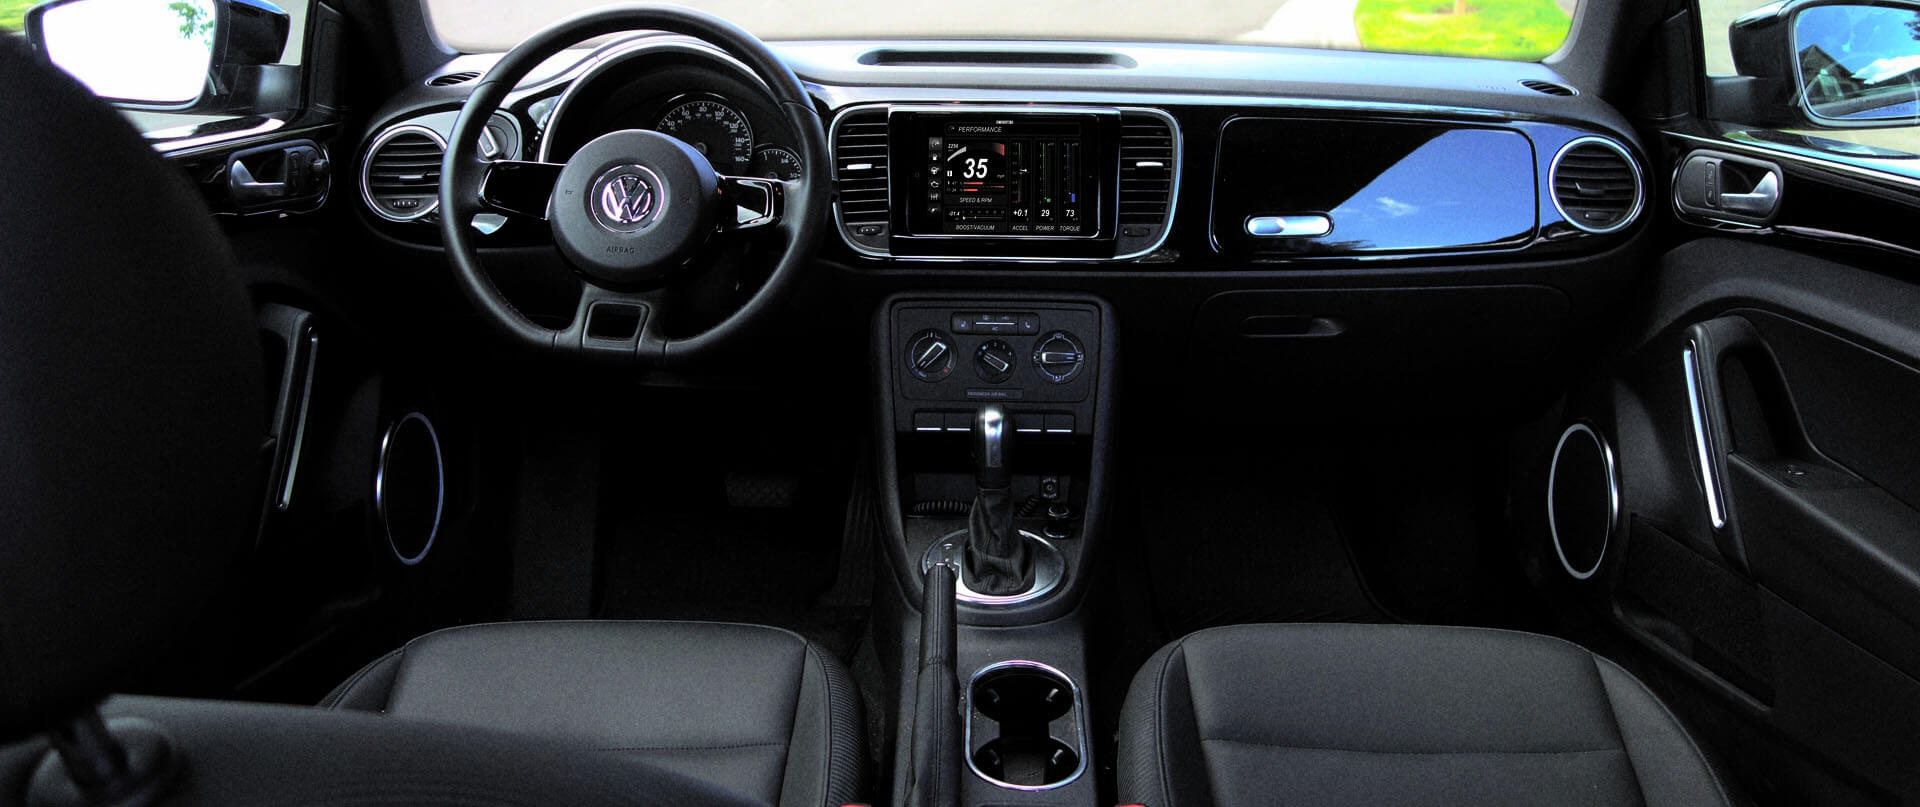 Volkswagen Touareg dash kit